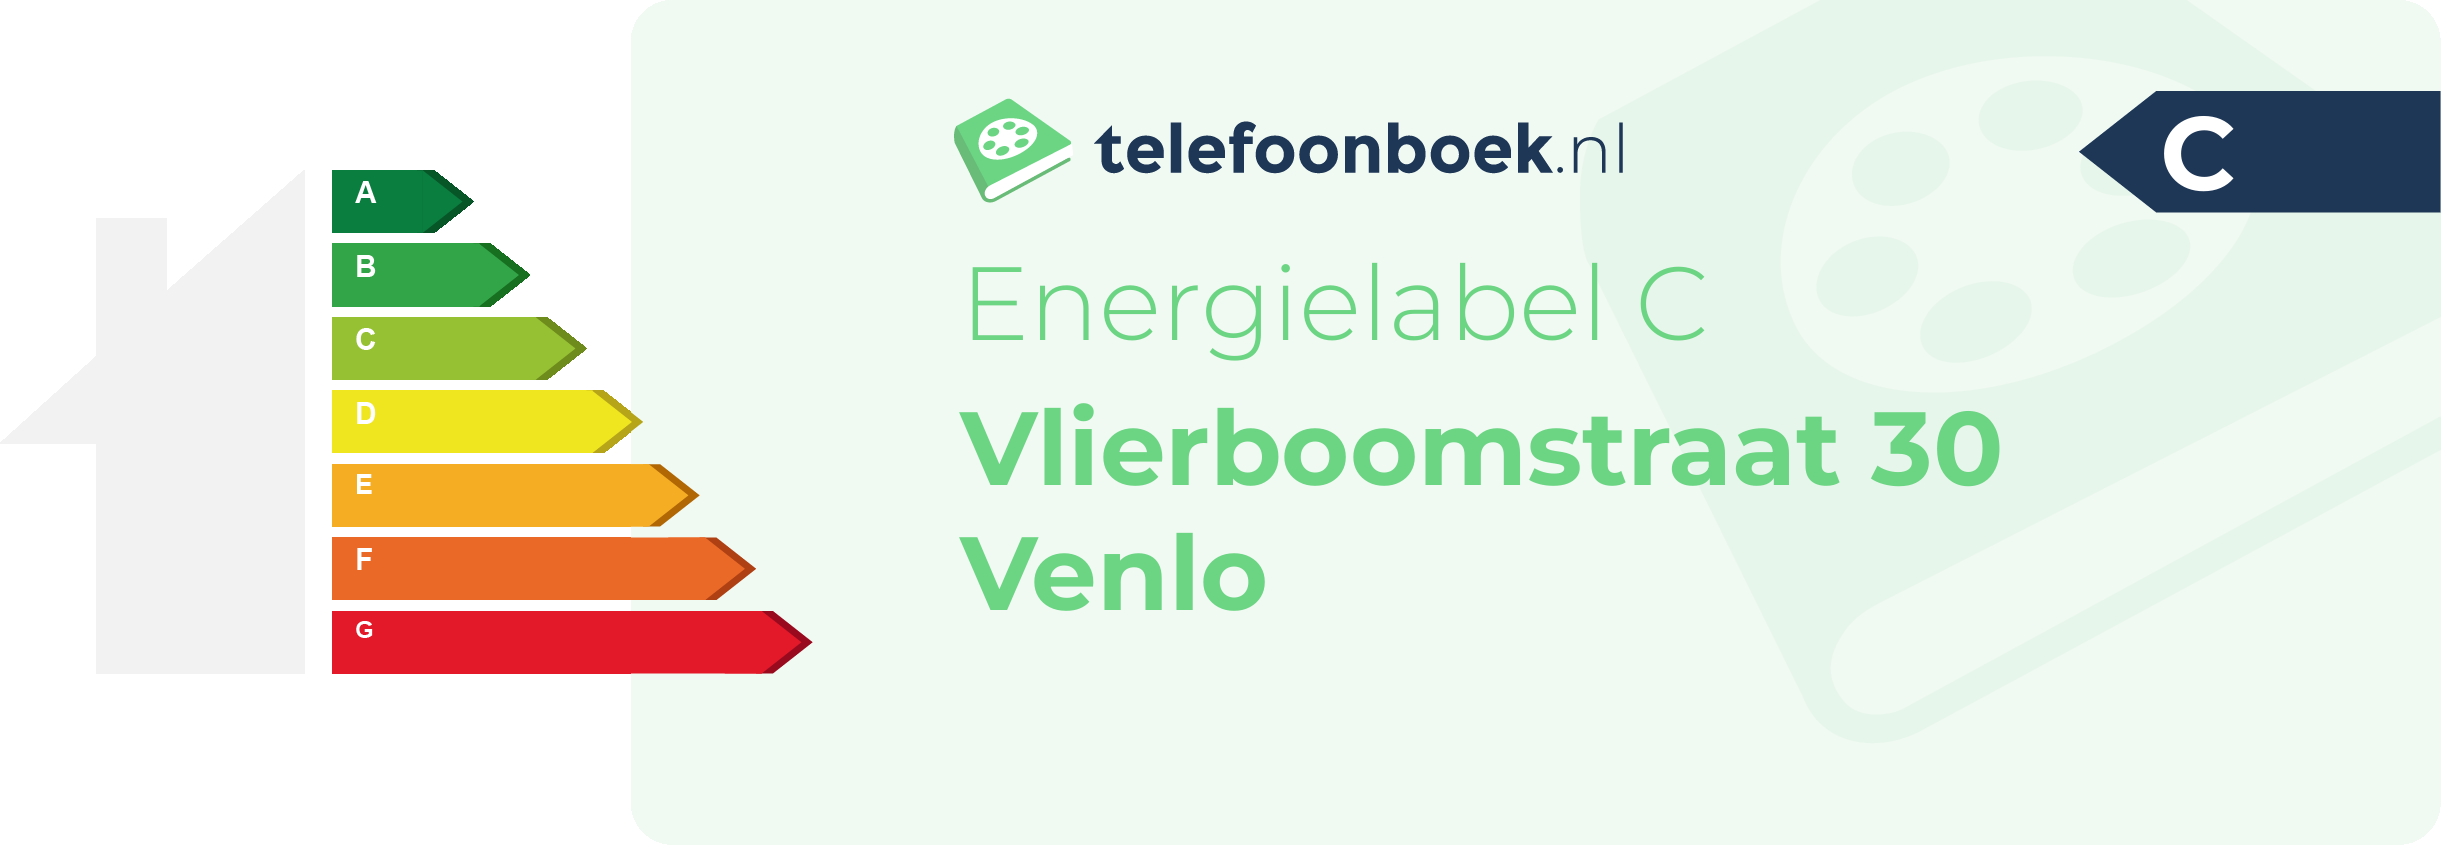 Energielabel Vlierboomstraat 30 Venlo